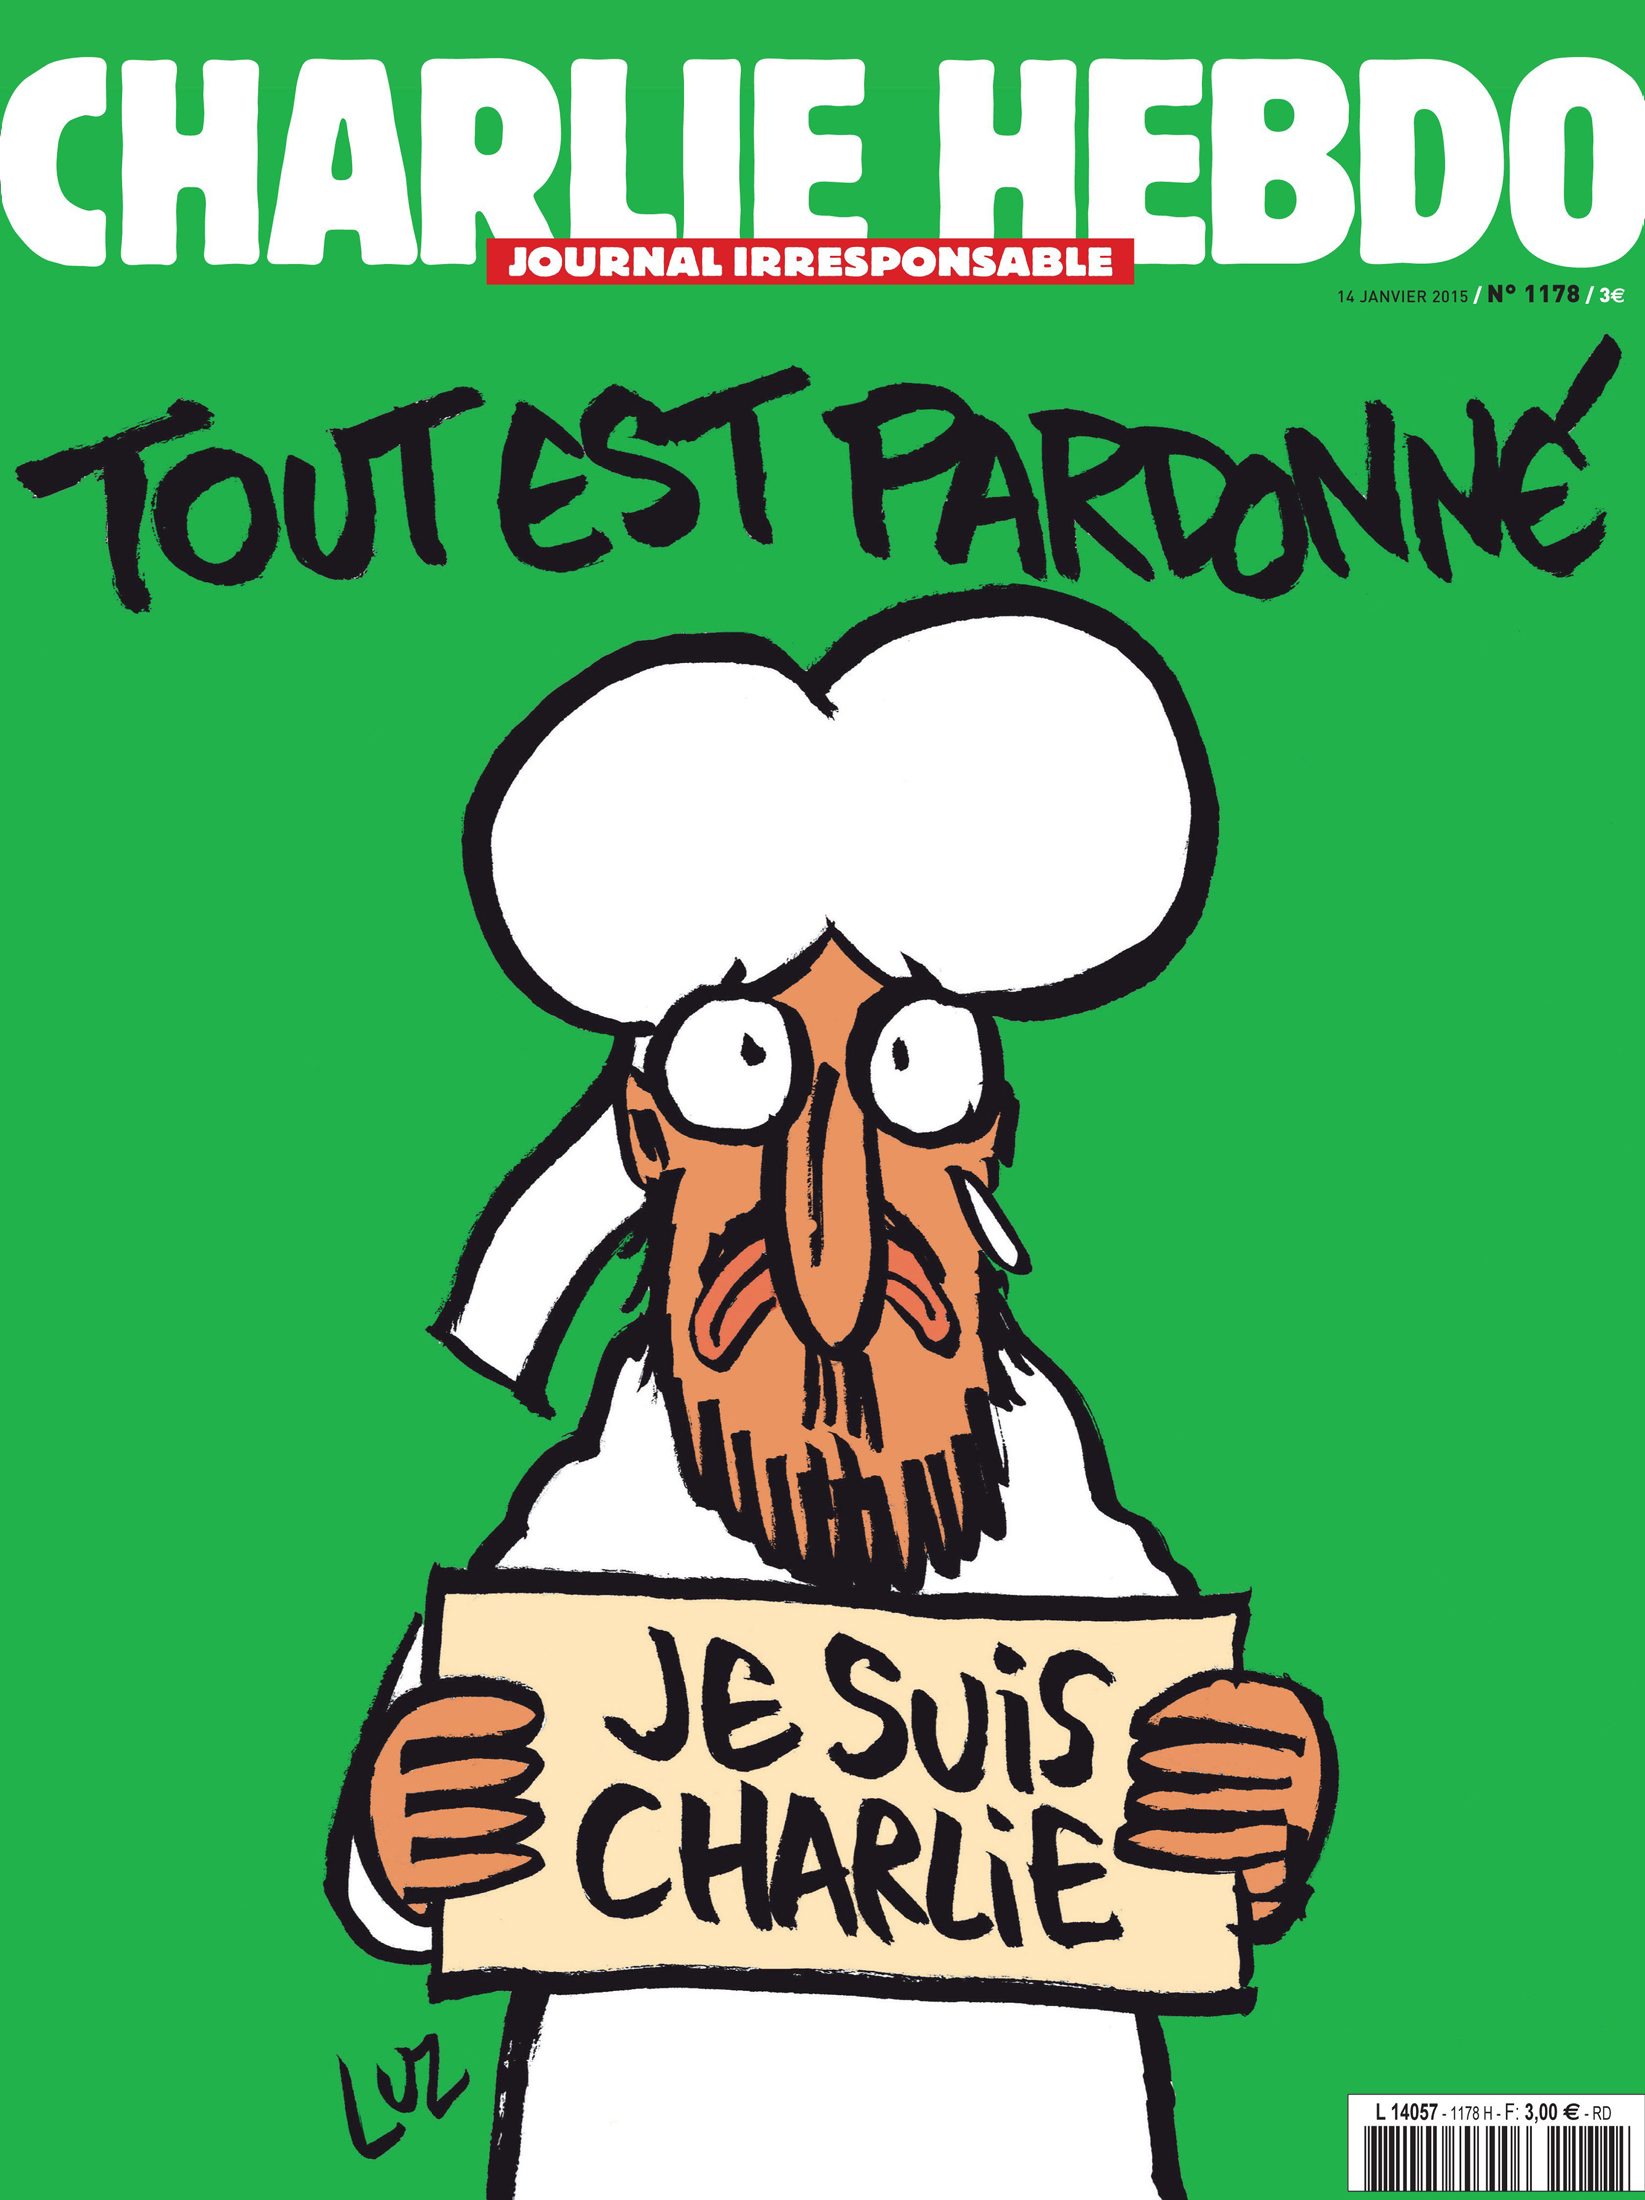 Ανάρπαστο το "Charlie Hebdo" στην πρώτη κυκλοφορία μετά την επίθεση